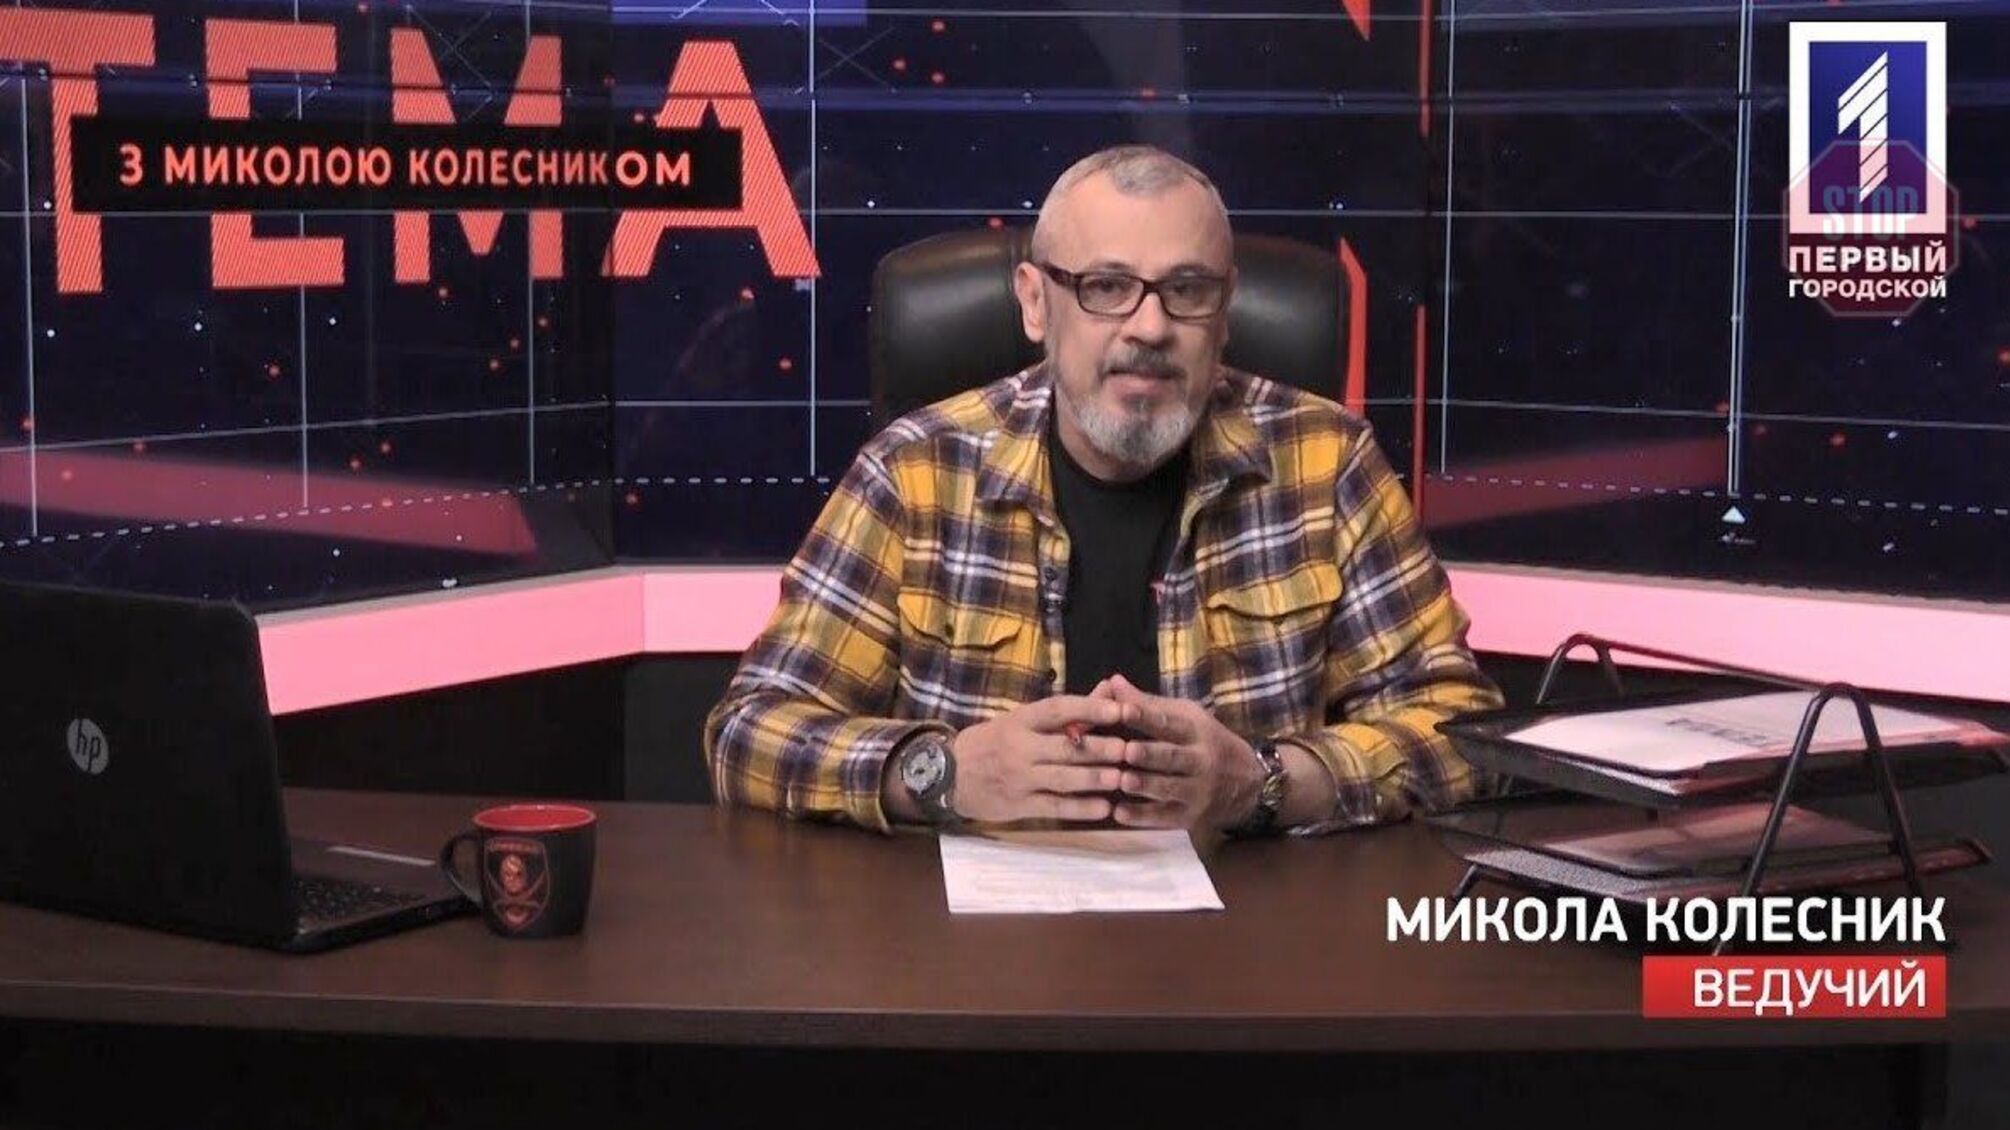 Мрій про мене, мрій: ексдепутат Колесник заявив про зустріч із журналістами, якої не було